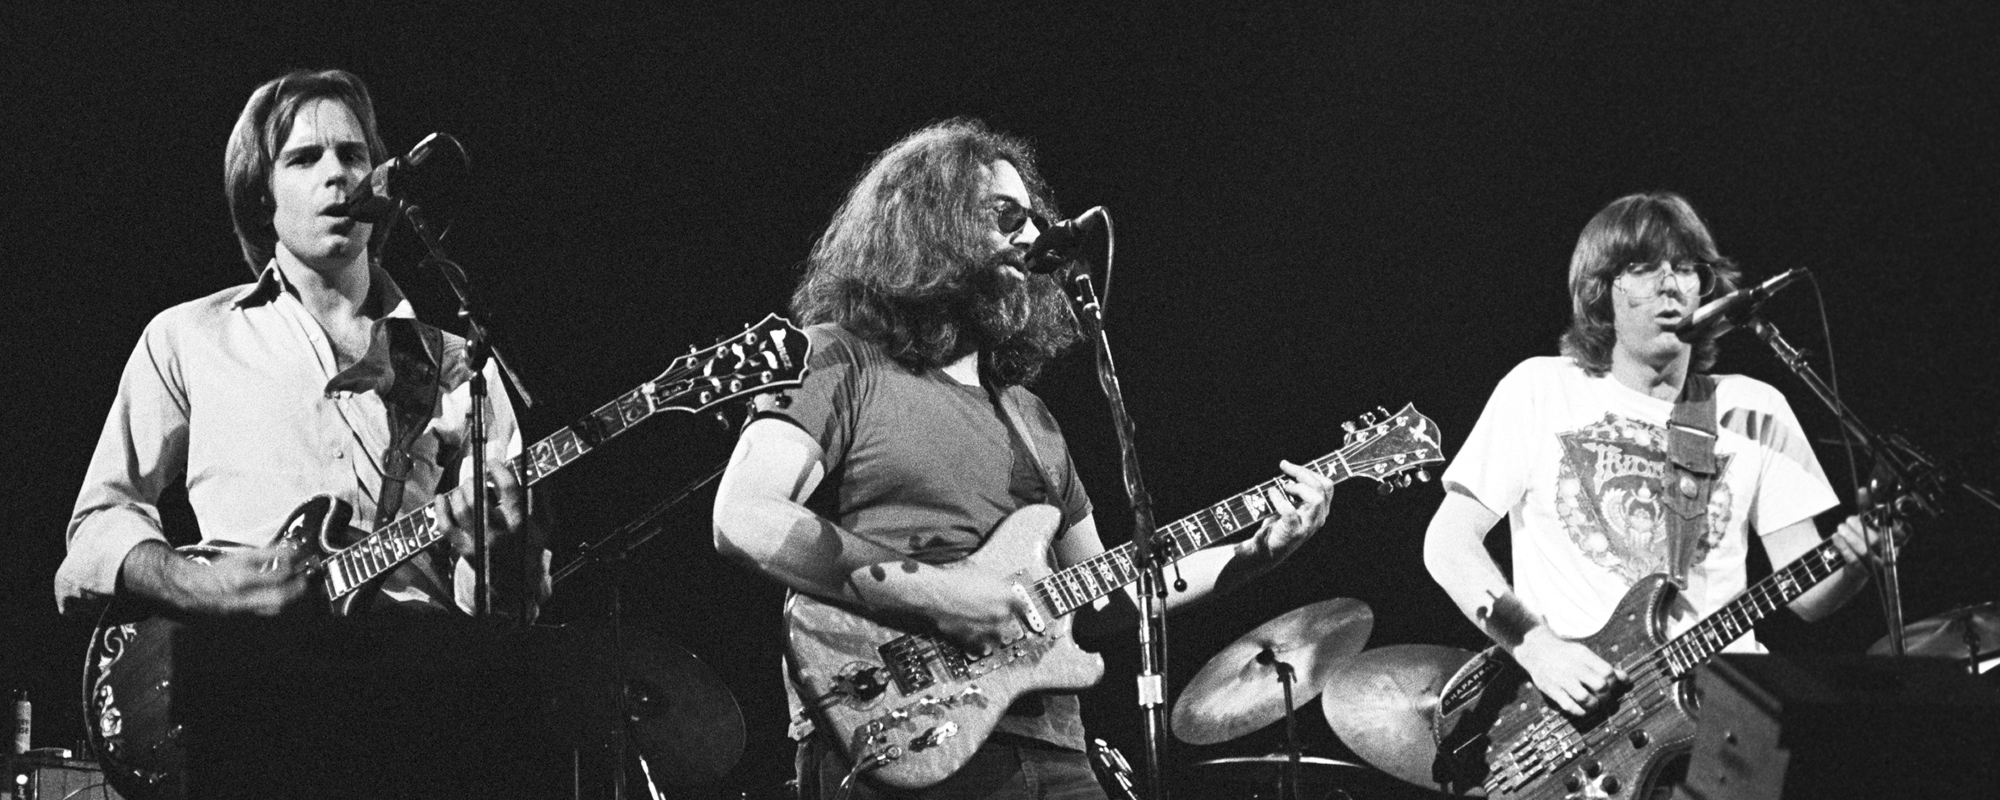 Grateful Dead s'apprête à sortir "Here Comes Sunshine", avec des concerts inédits de 1973